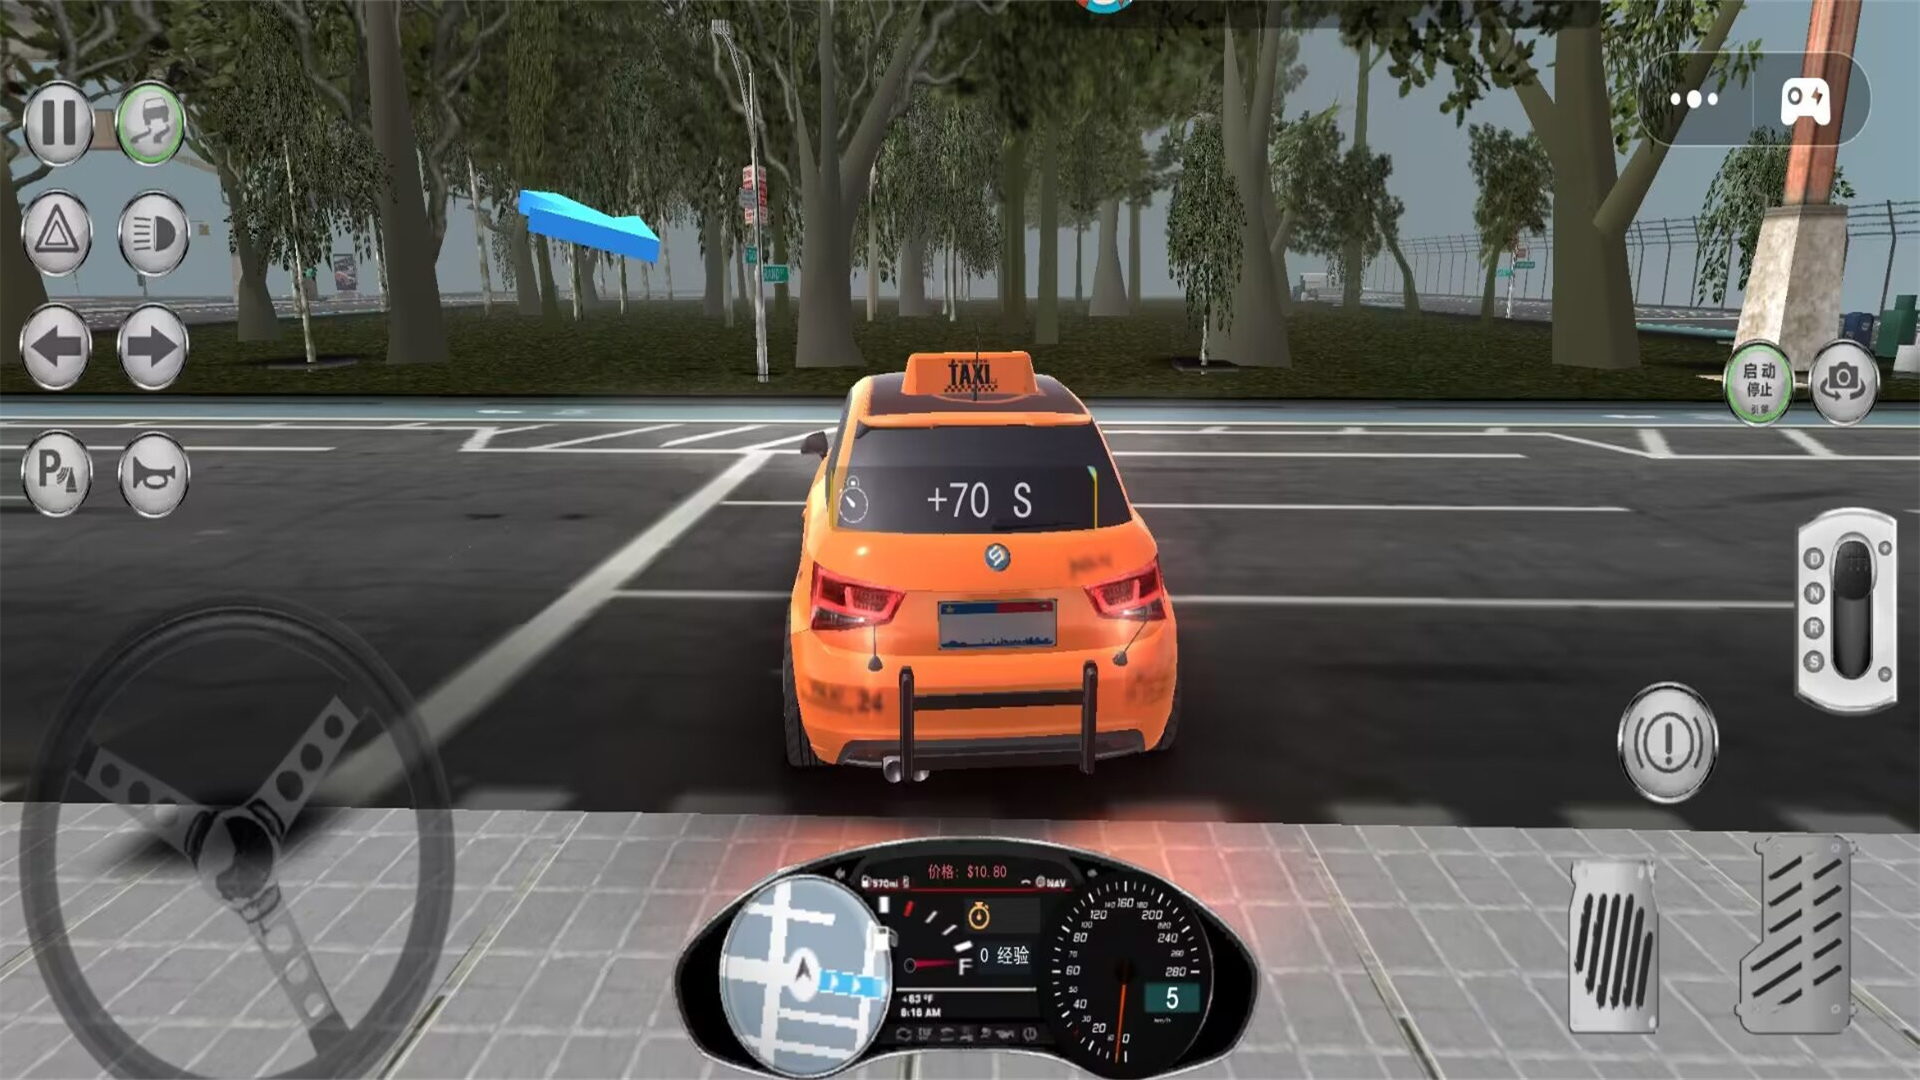 出租车司机模拟游戏第3张截图